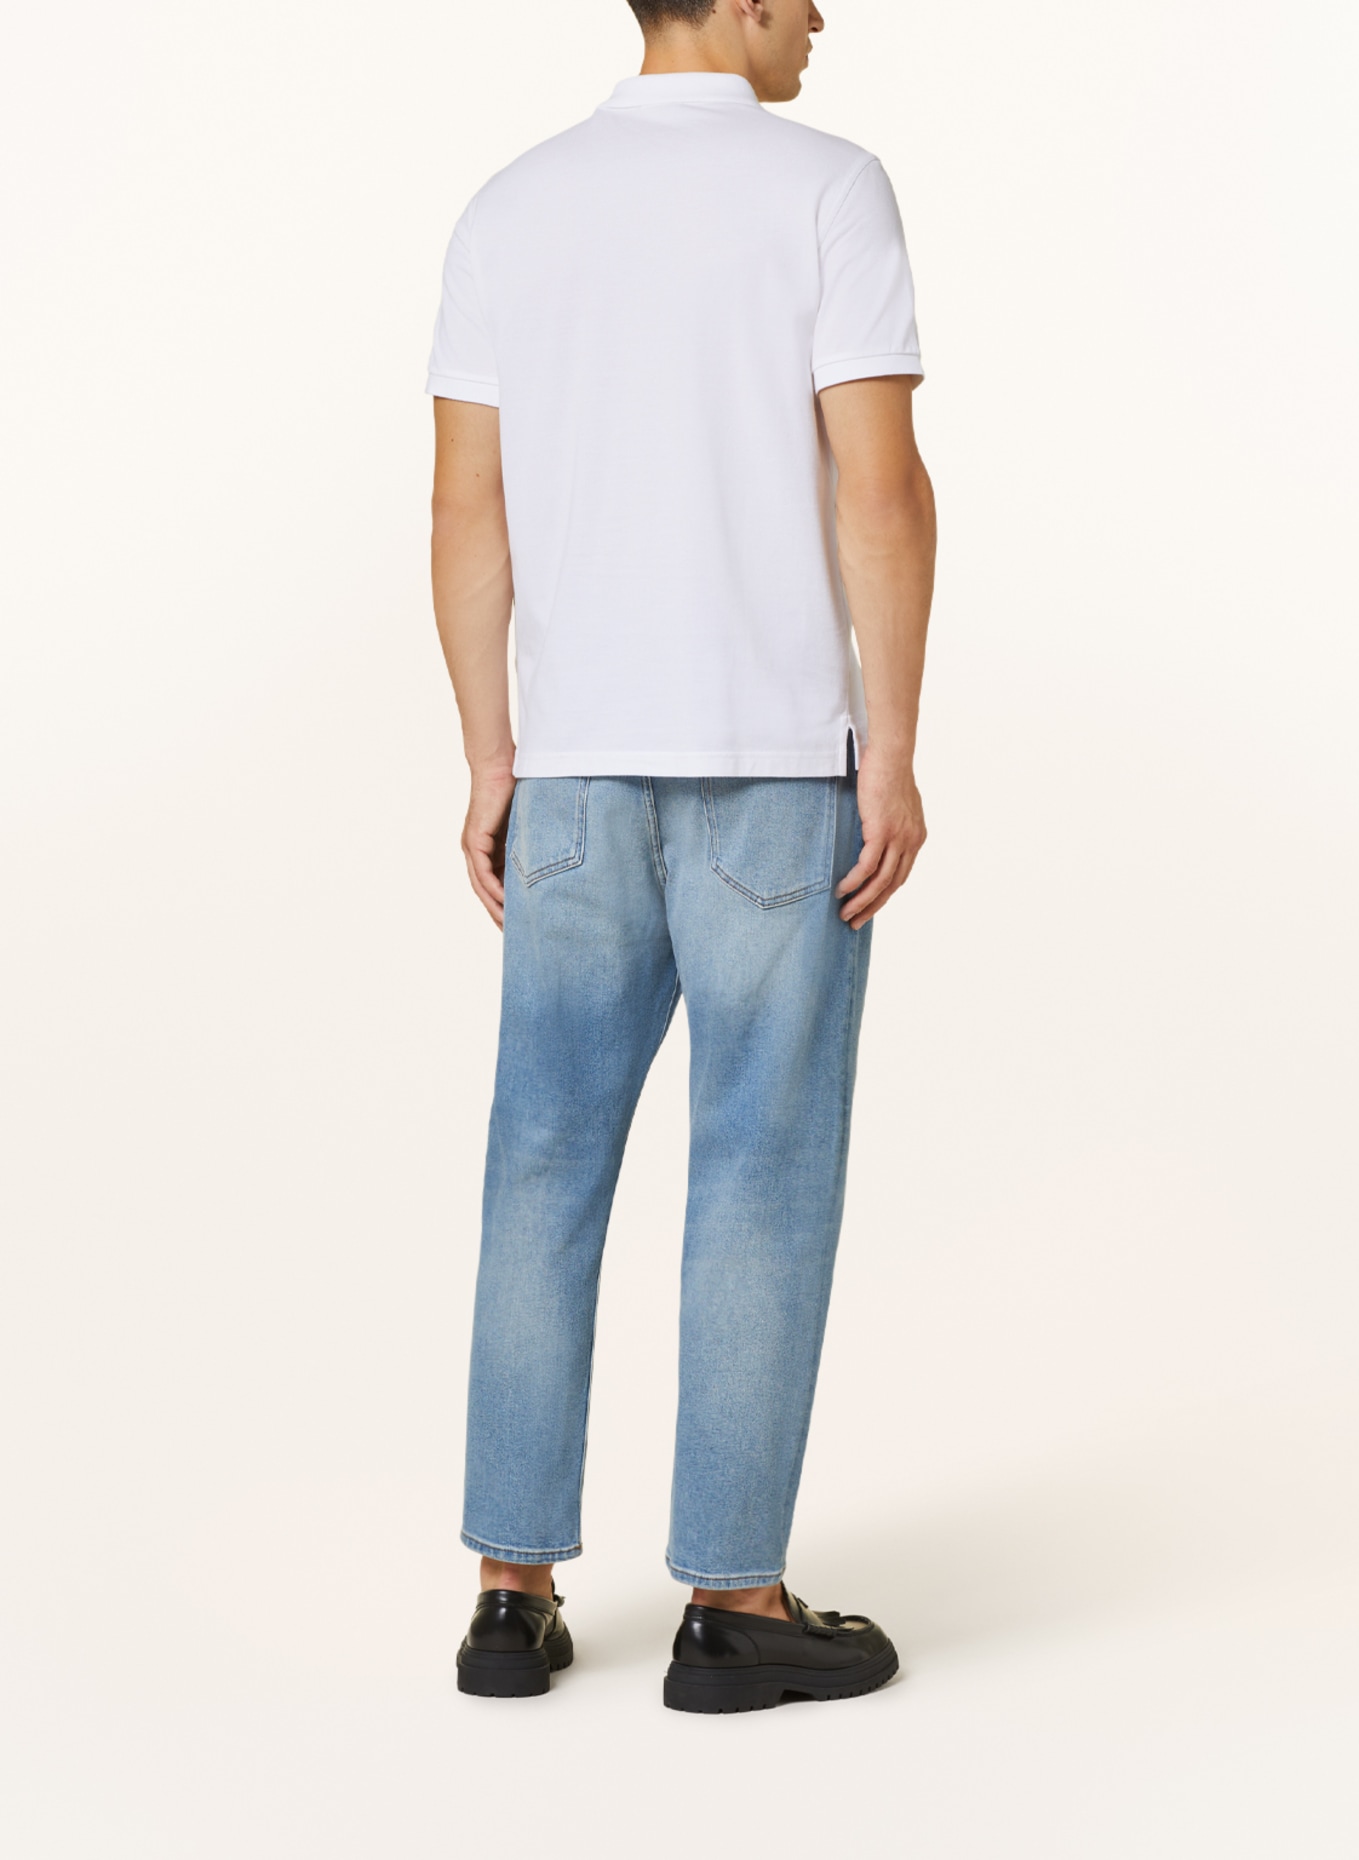 GANT Piqué polo shirt regular fit, Color: WHITE (Image 3)